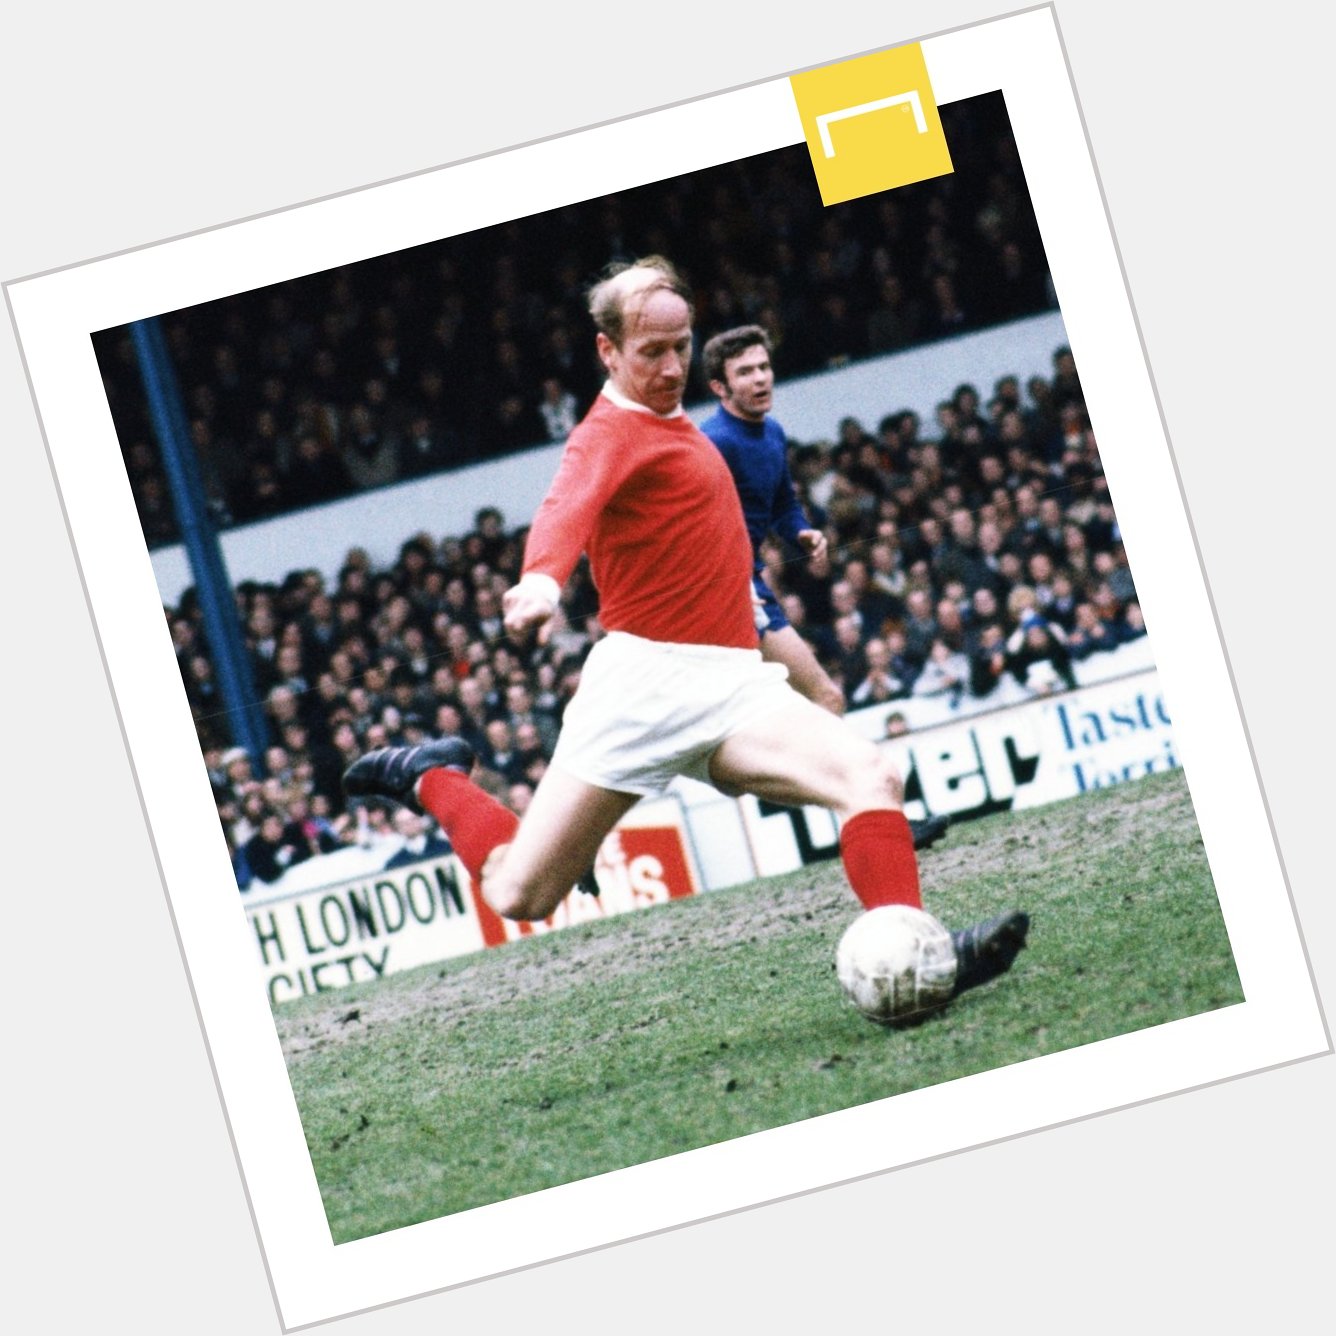 Happy birthday to Manchester United & England legend Bobby Charlton! 